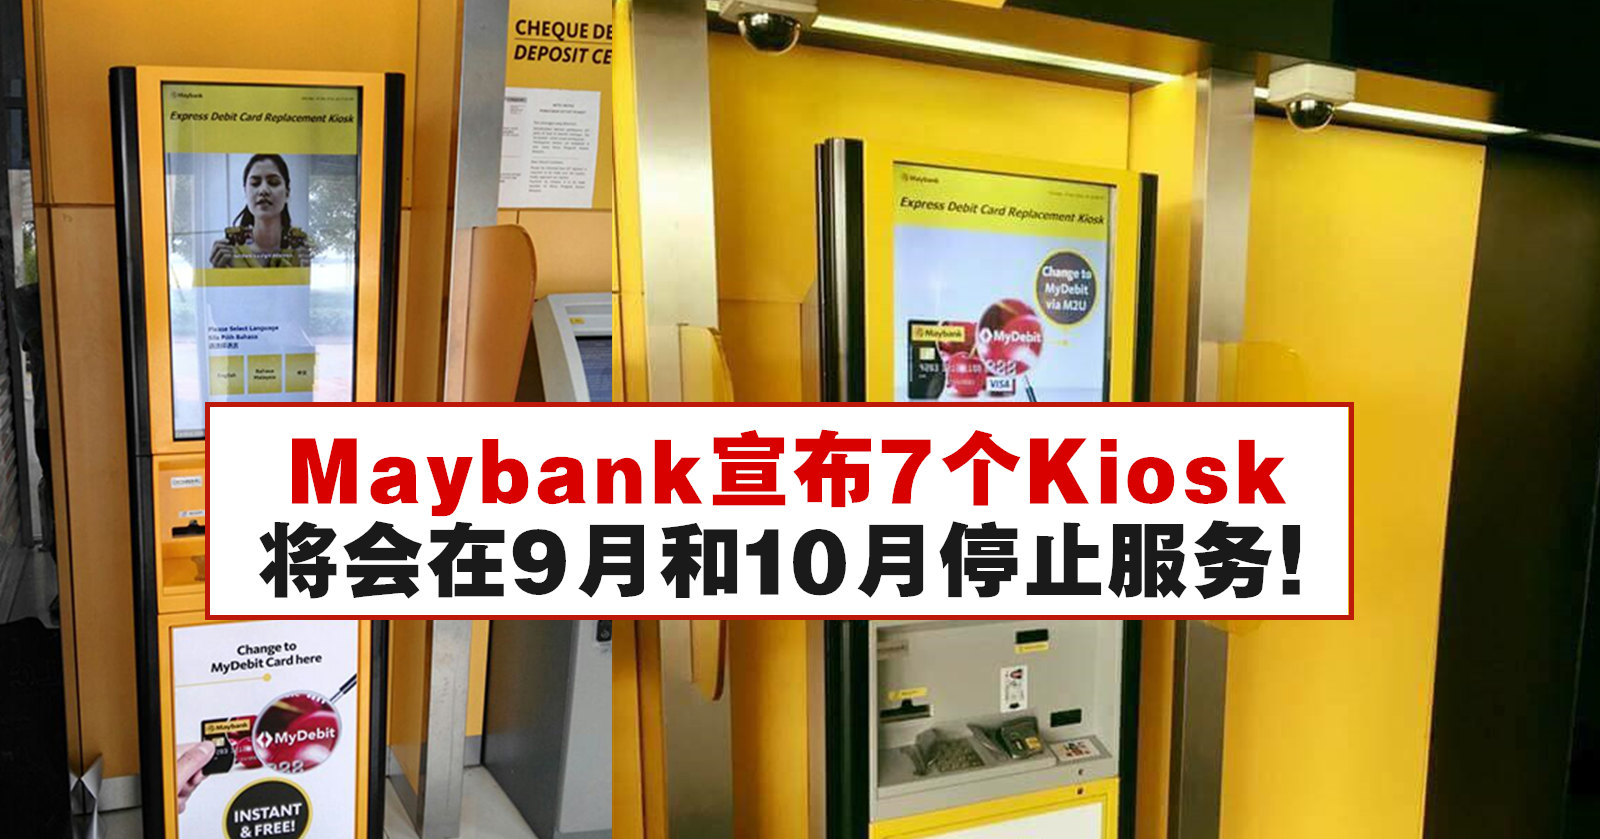 Kiosk replacement maybank card CARA TUKAR